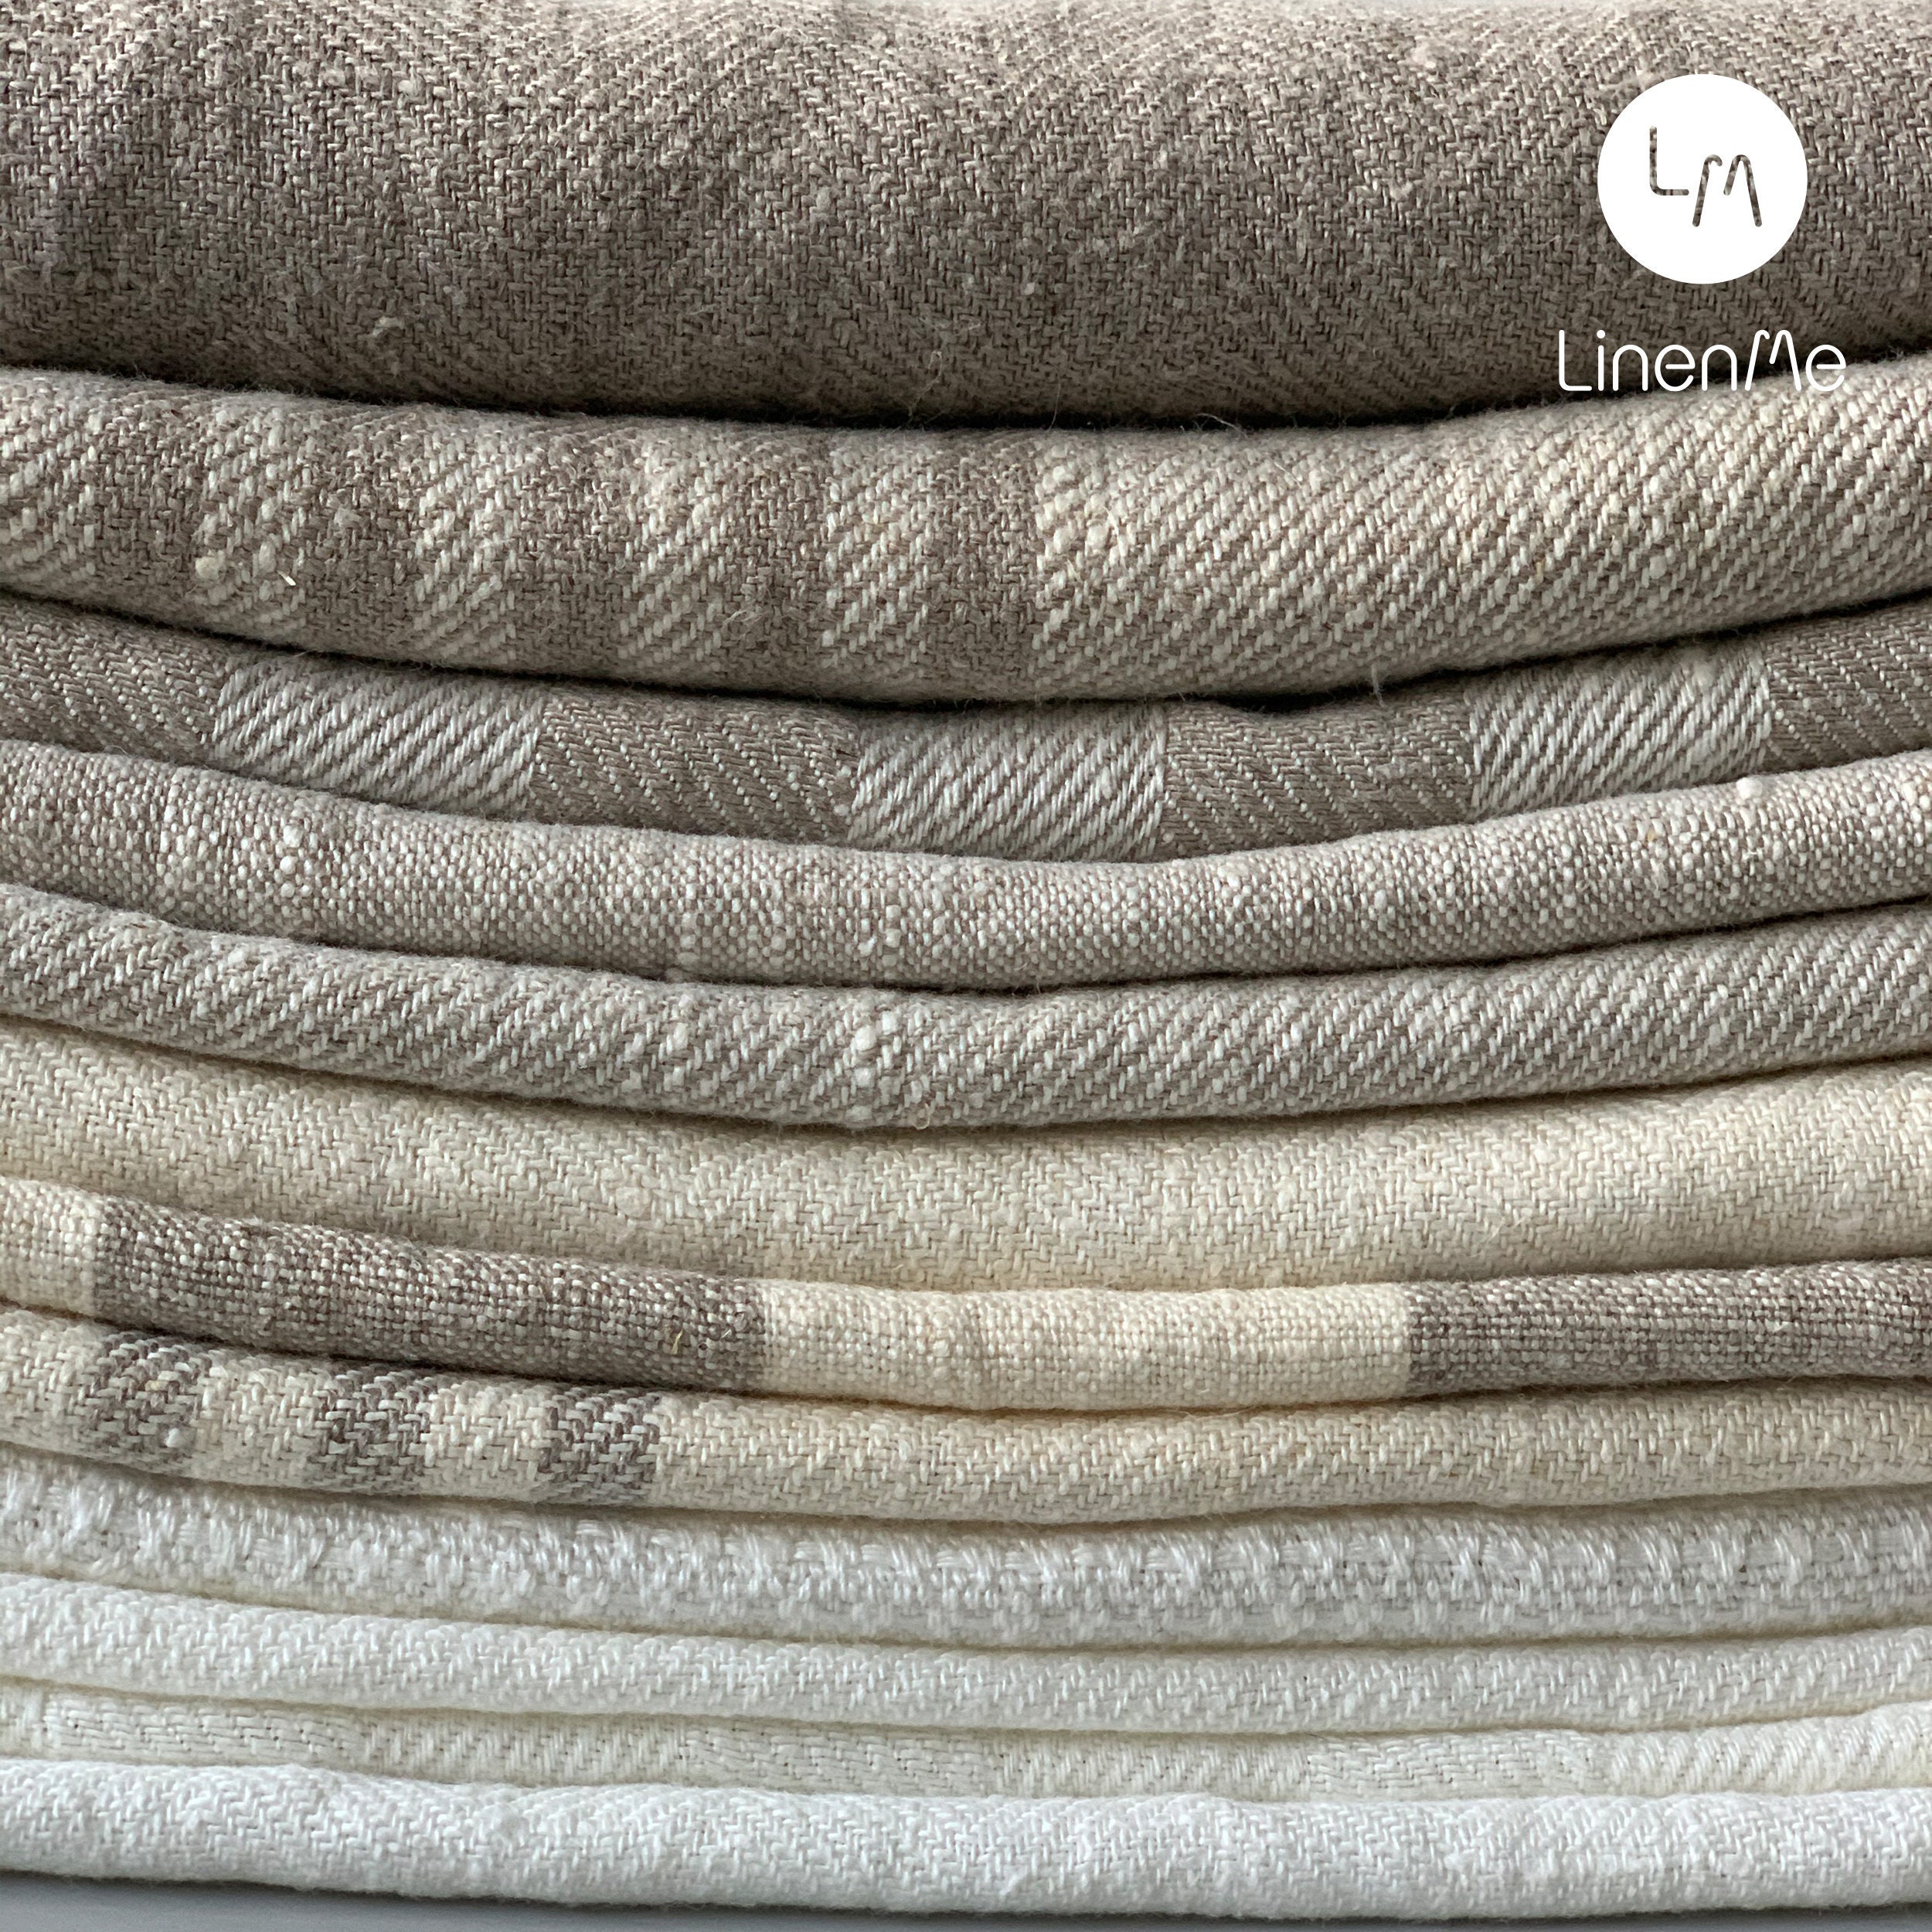 Softened Linen Wool Blend Fabric, Medium Weight Light Gray Linen